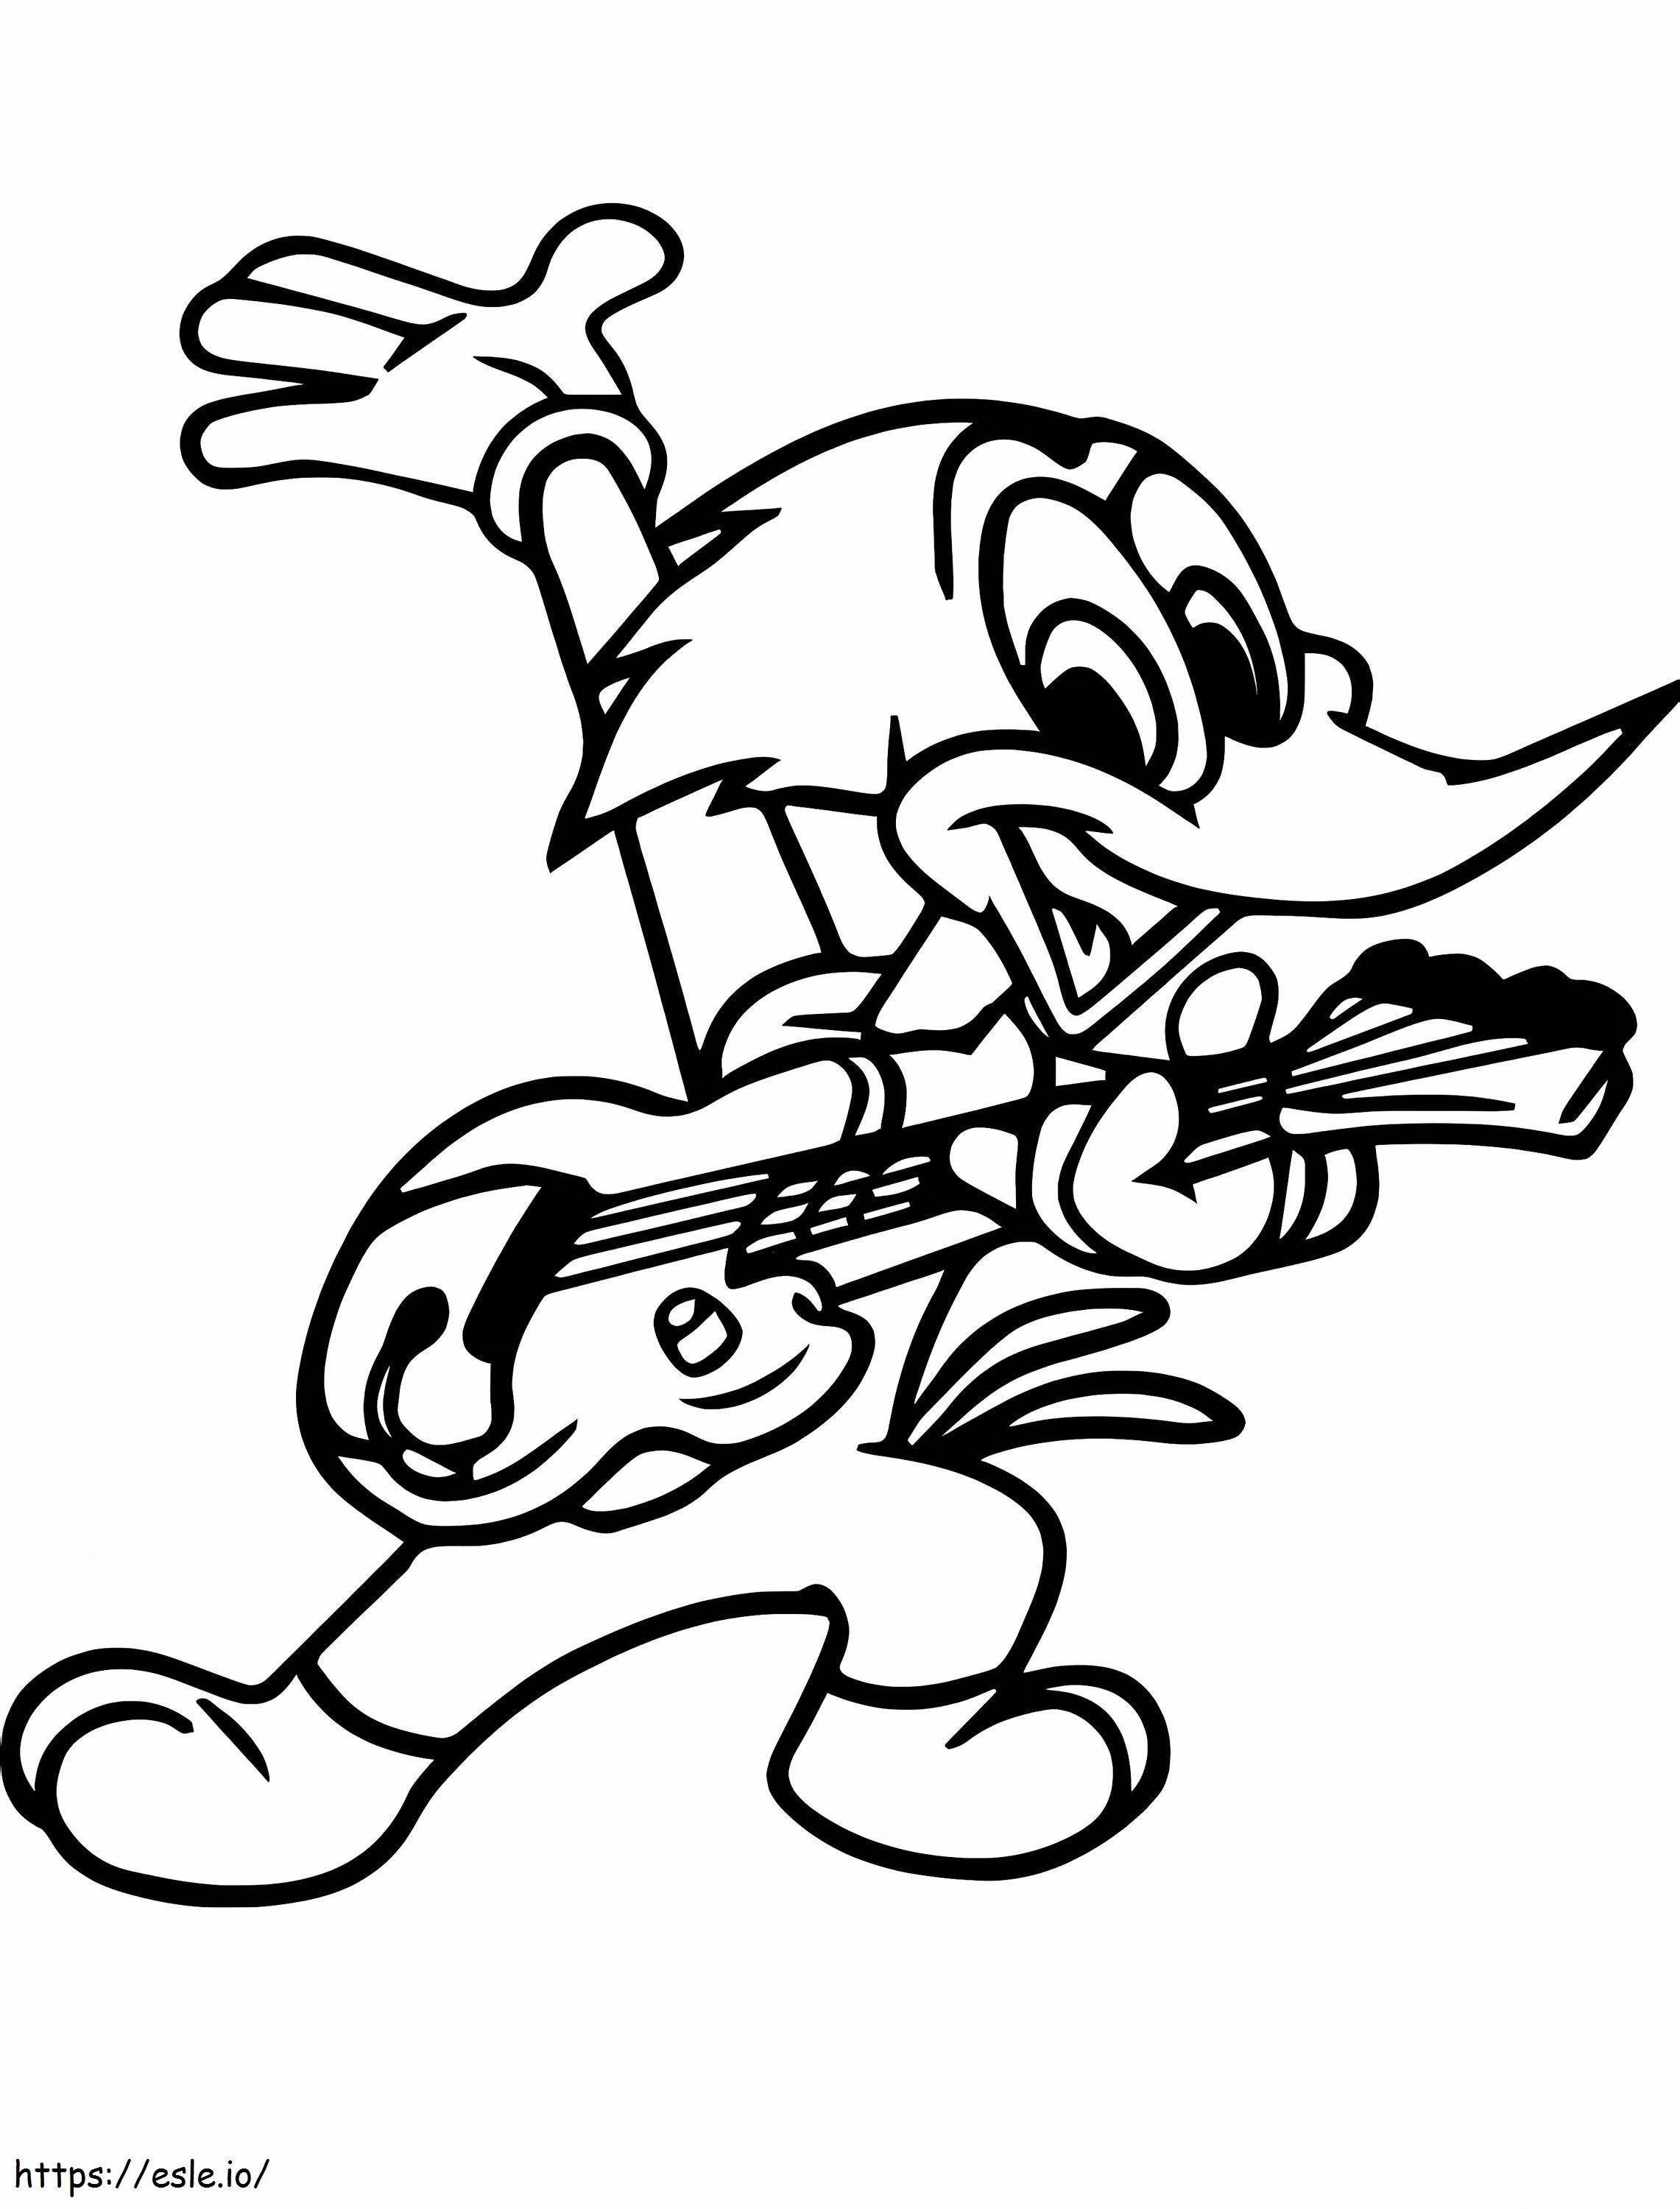 Woody Woodpecker tocando la guitarra para colorear